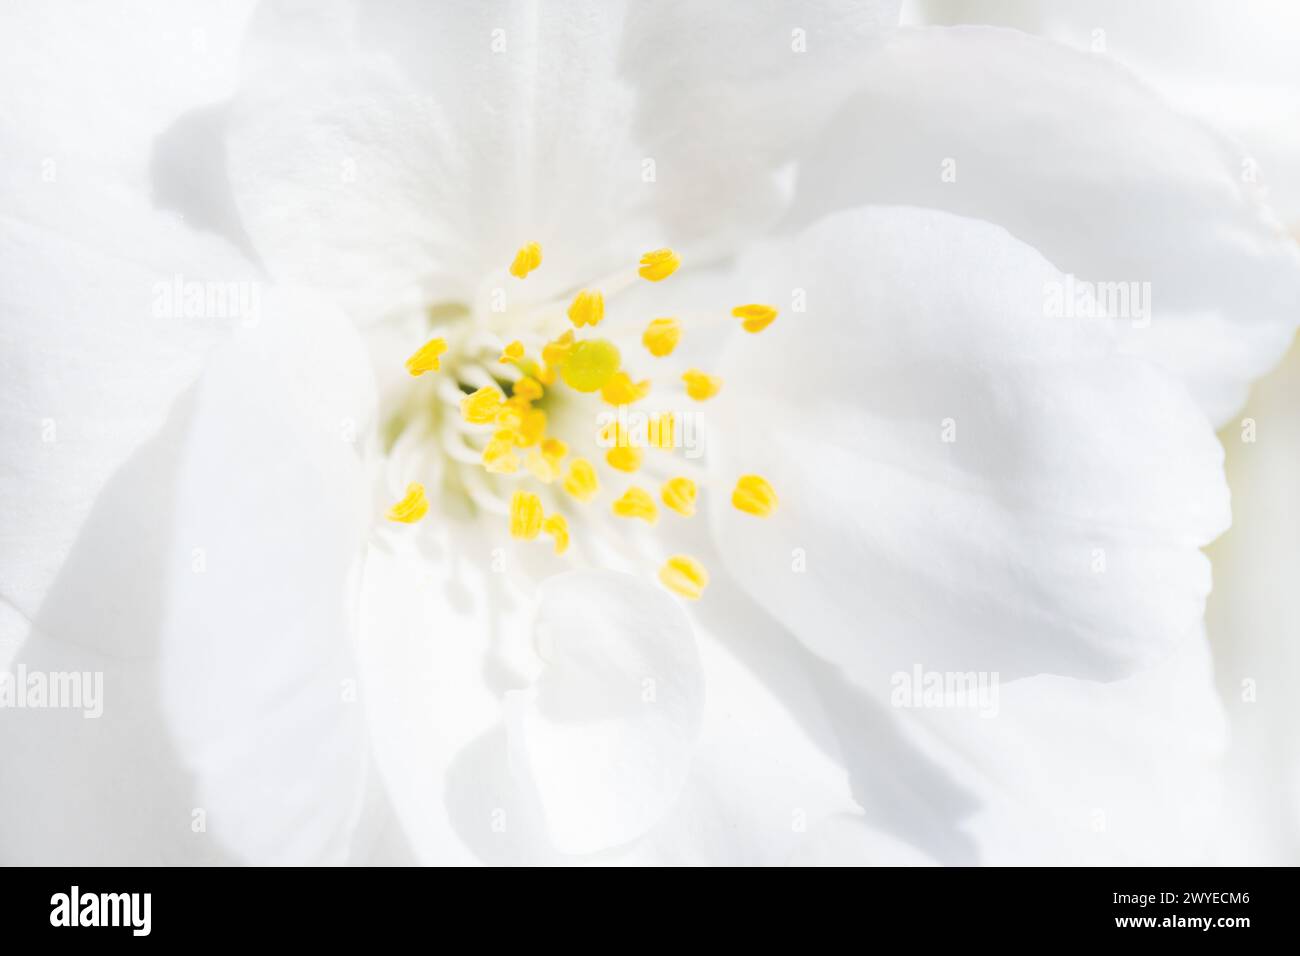 Vue rapprochée des pistils jaunes et des pétales blancs d'une fleur de cerisier blanc Banque D'Images